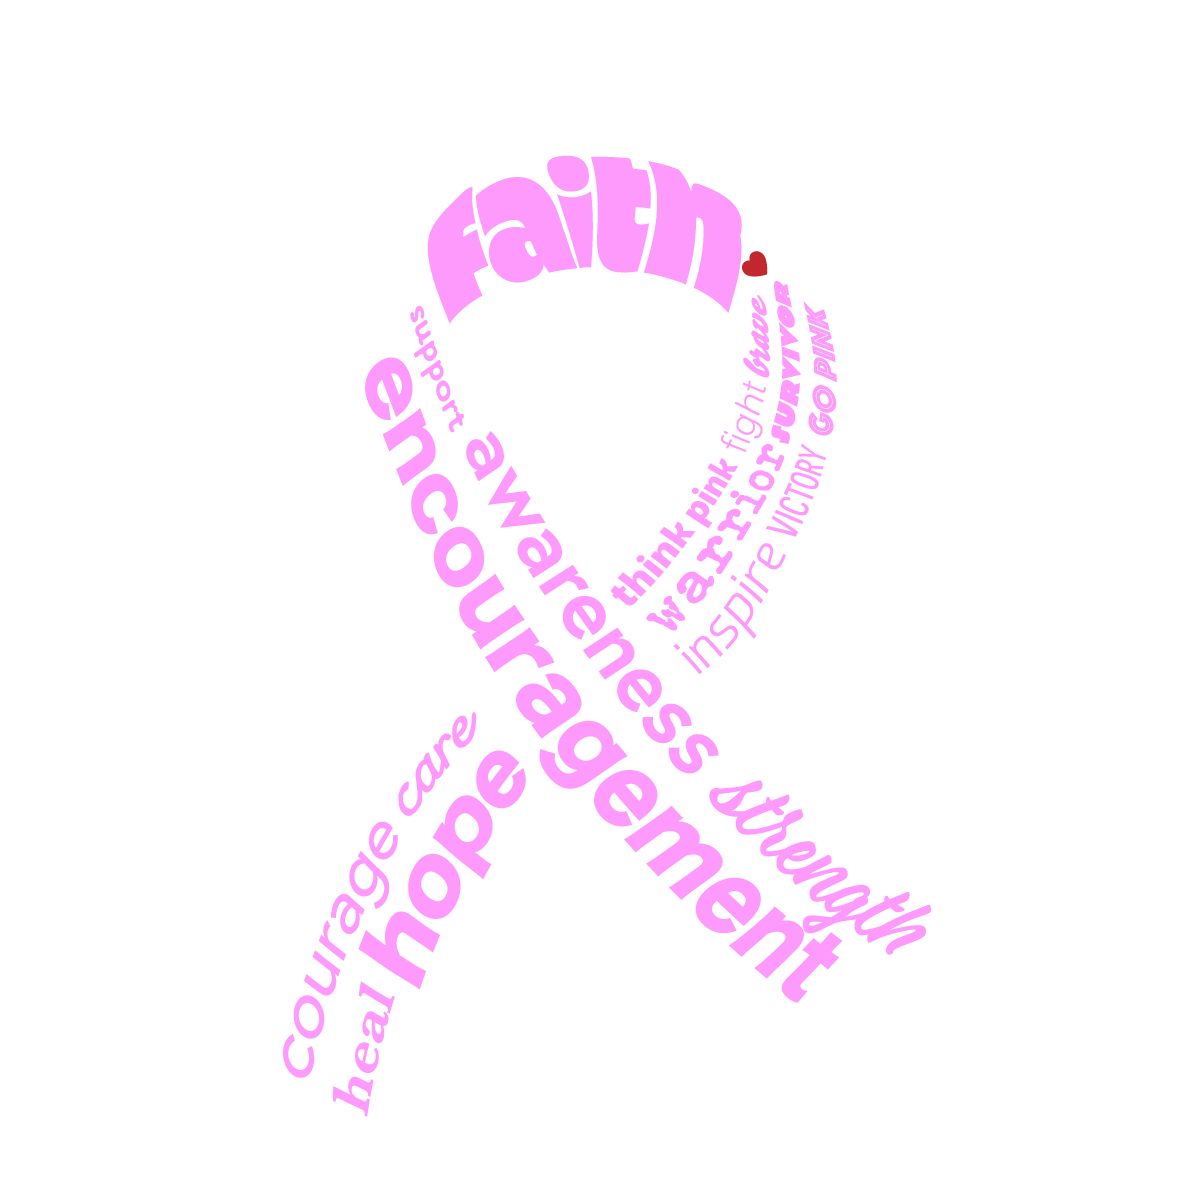 breastcancer2021-logotransp.png